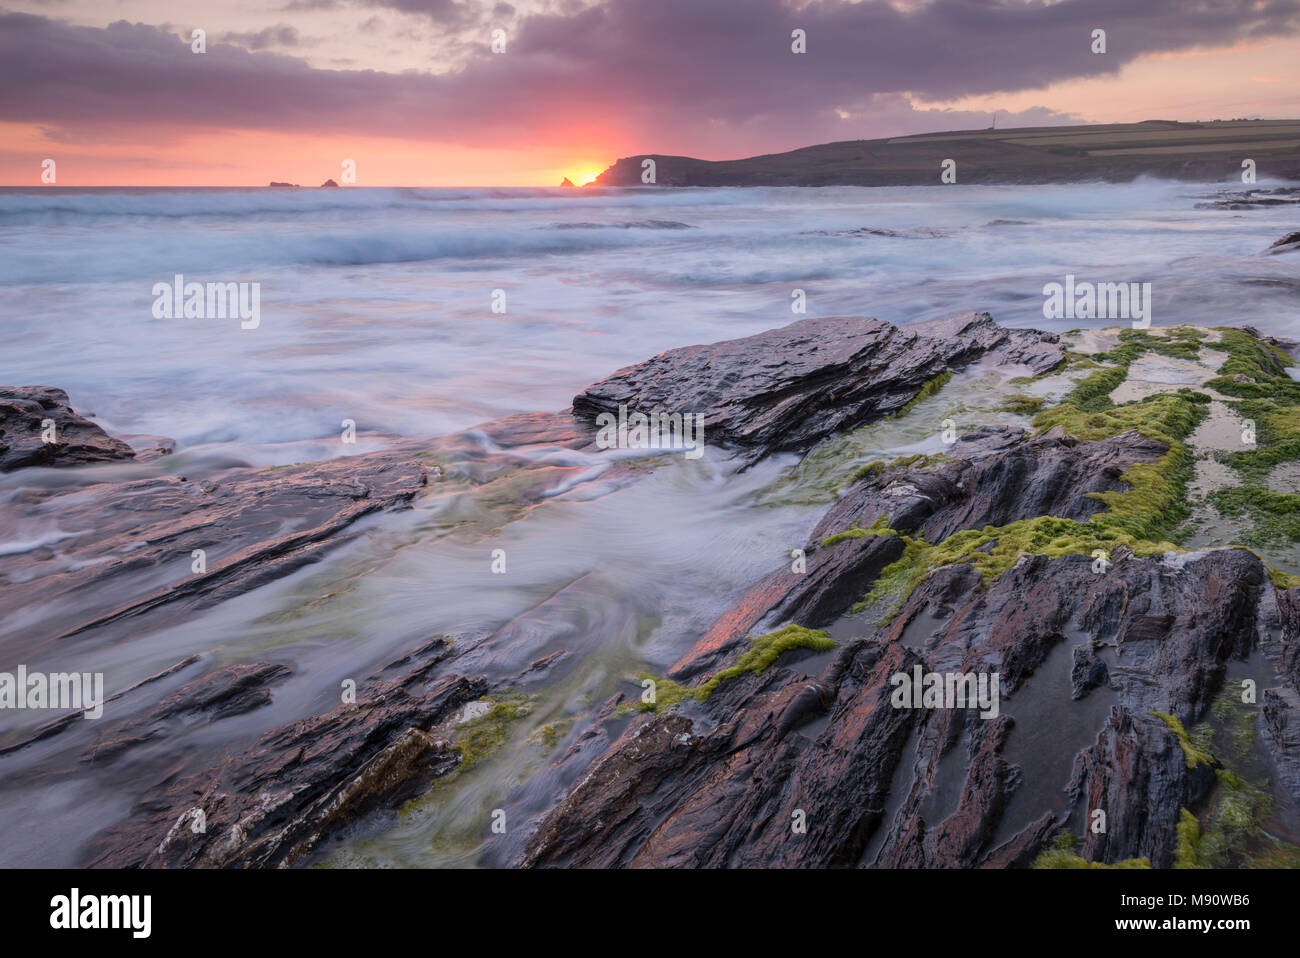 Les vagues déferlent sur les rives rocheuses de la Baie d'objets piégés au coucher du soleil, Cornwall, Angleterre. L'été (juillet) 2017. Banque D'Images